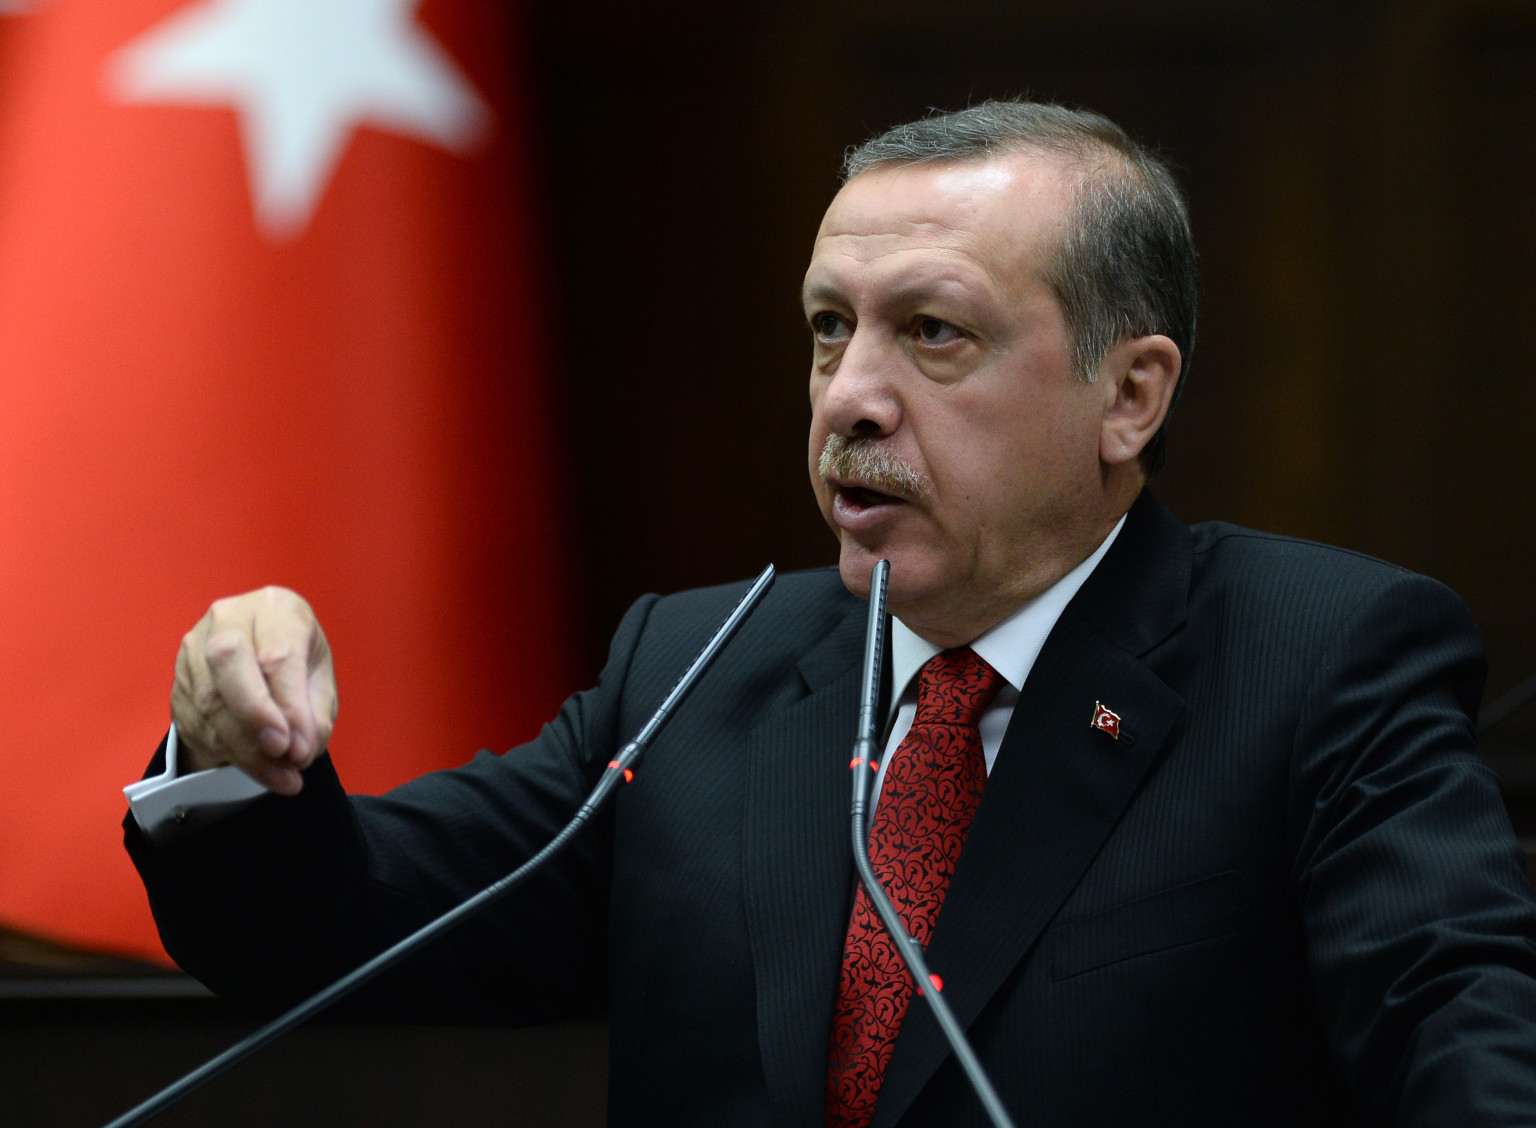 أردوغان يزور الأردن الإثنين القادم